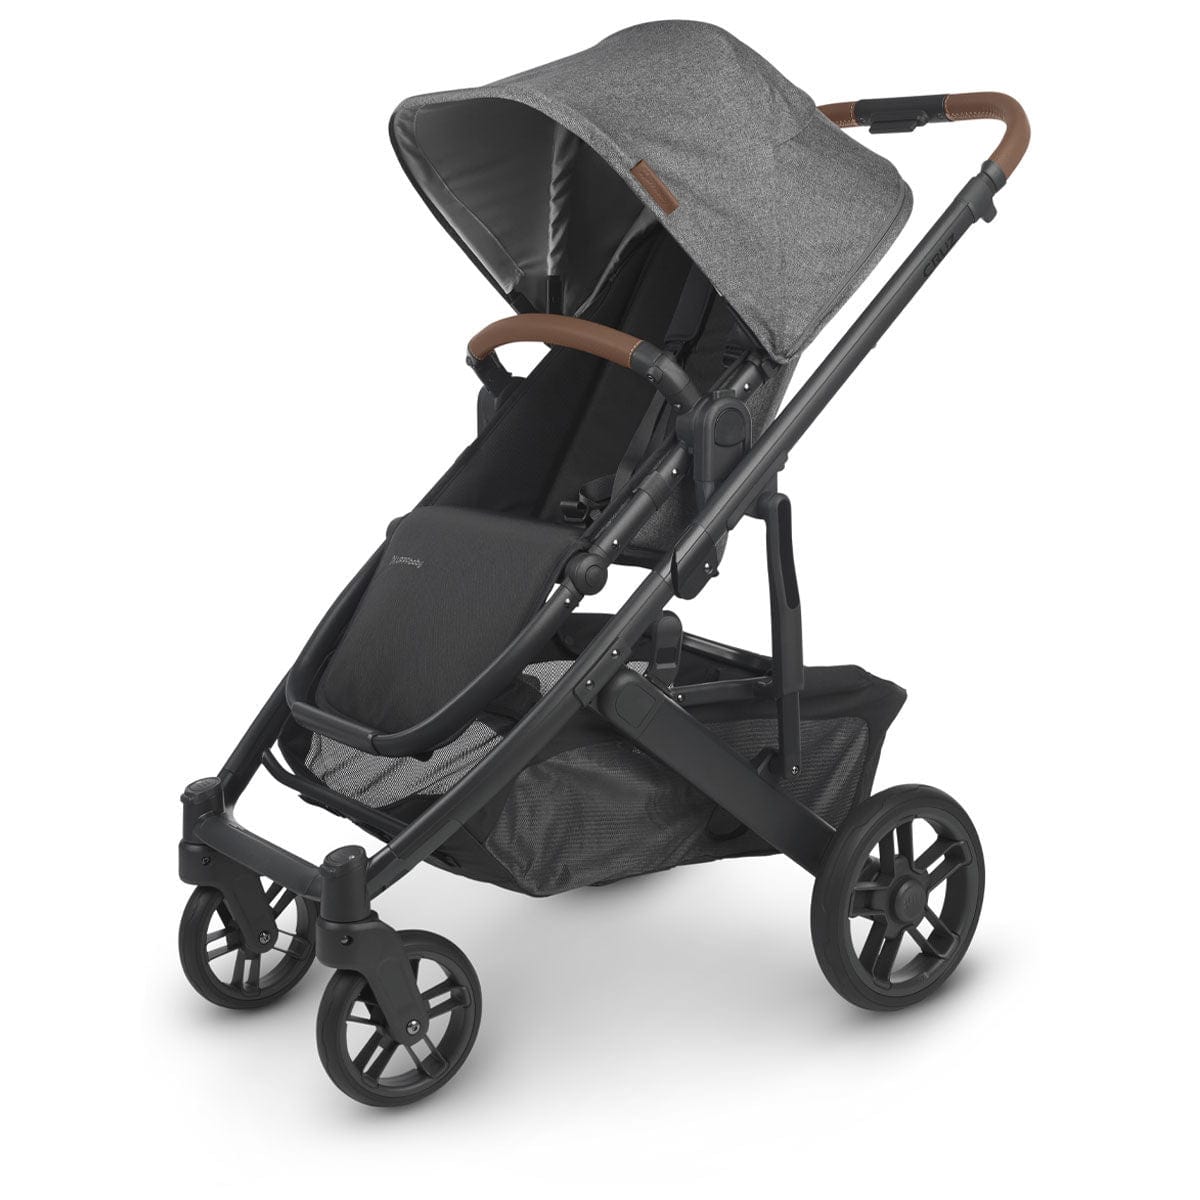 UPPAbaby stroller UPPAbaby CRUZ V2 Stroller - Greyson (Charcoal Melange/Carbon/Saddle Leather)